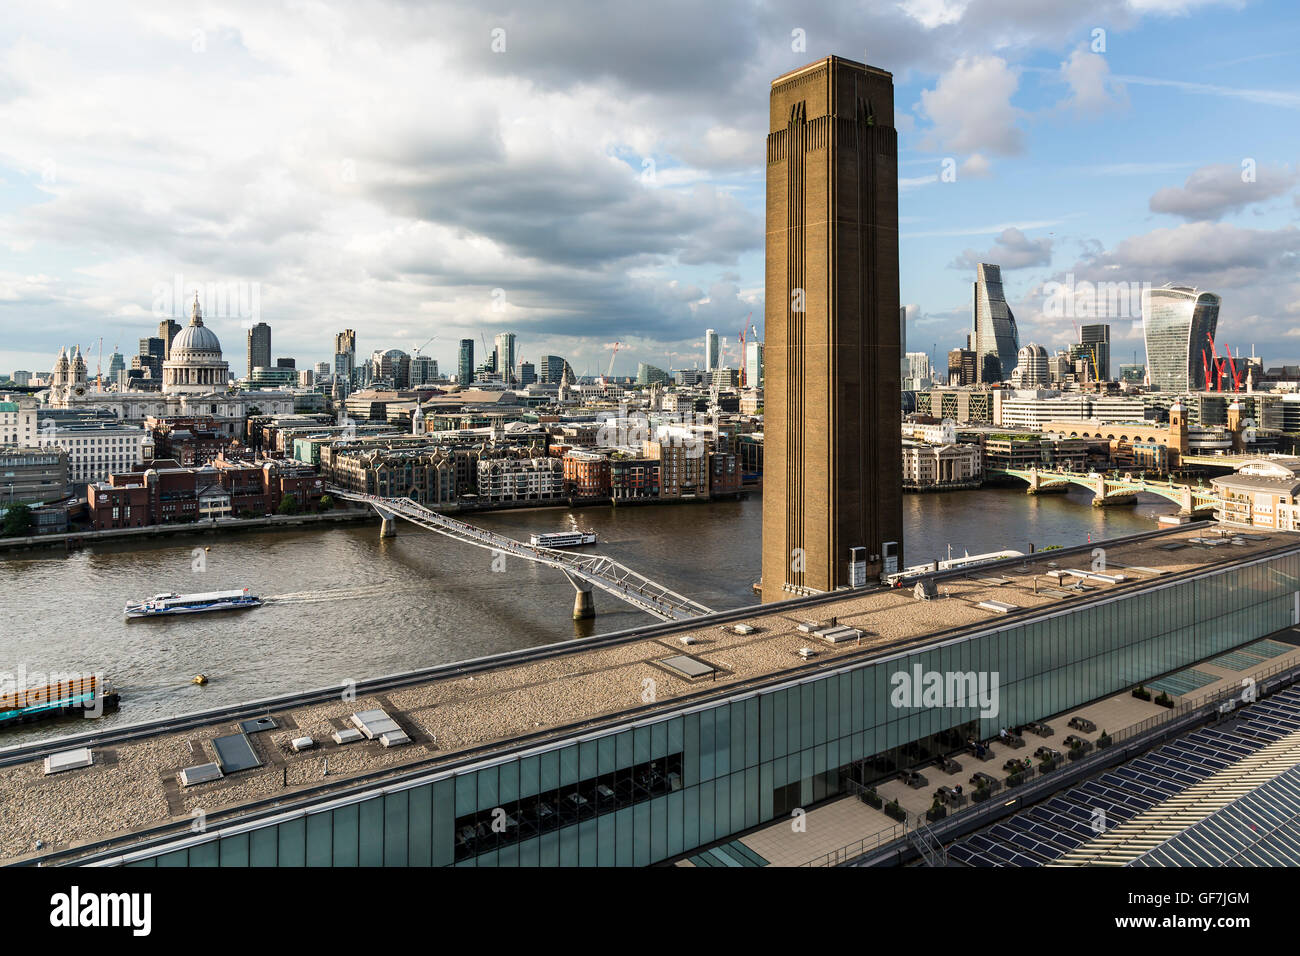 London, England - Juni 2016. Blick auf das Tate Museum und St. Pauls  Cathedral von der Tate Modern Aussichtsplattform Stockfotografie - Alamy